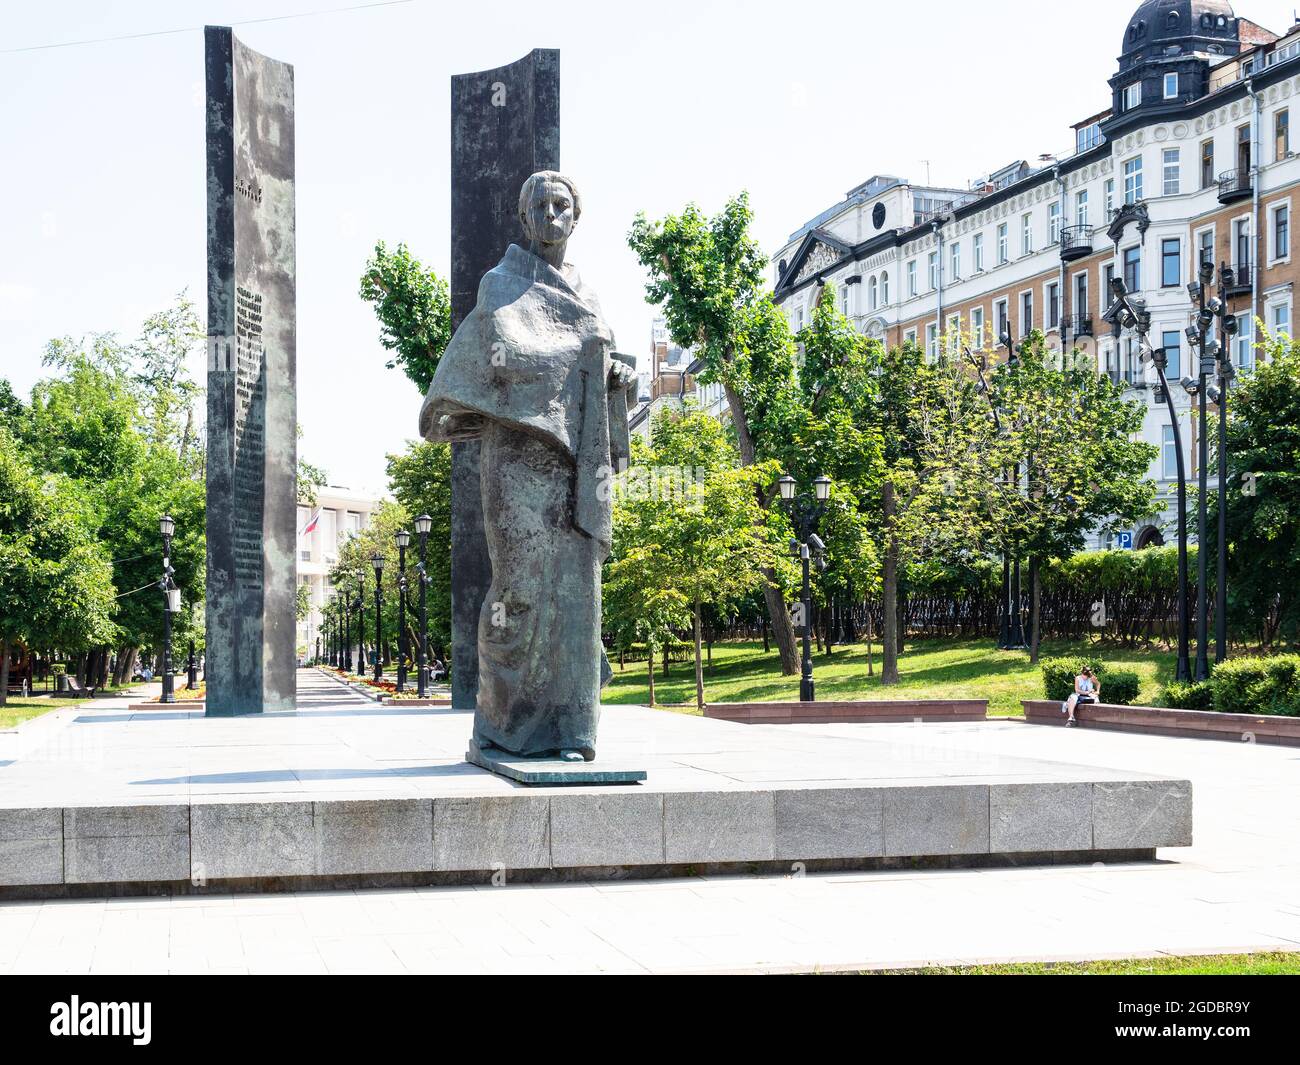 Moskau, Russland - 11. Juli 2021: Sretenski Tor Platz mit Denkmal für Nadeschda Krupskaya und grünen Boulevard in Moskau. Das Denkmal wurde eingeweiht Stockfoto